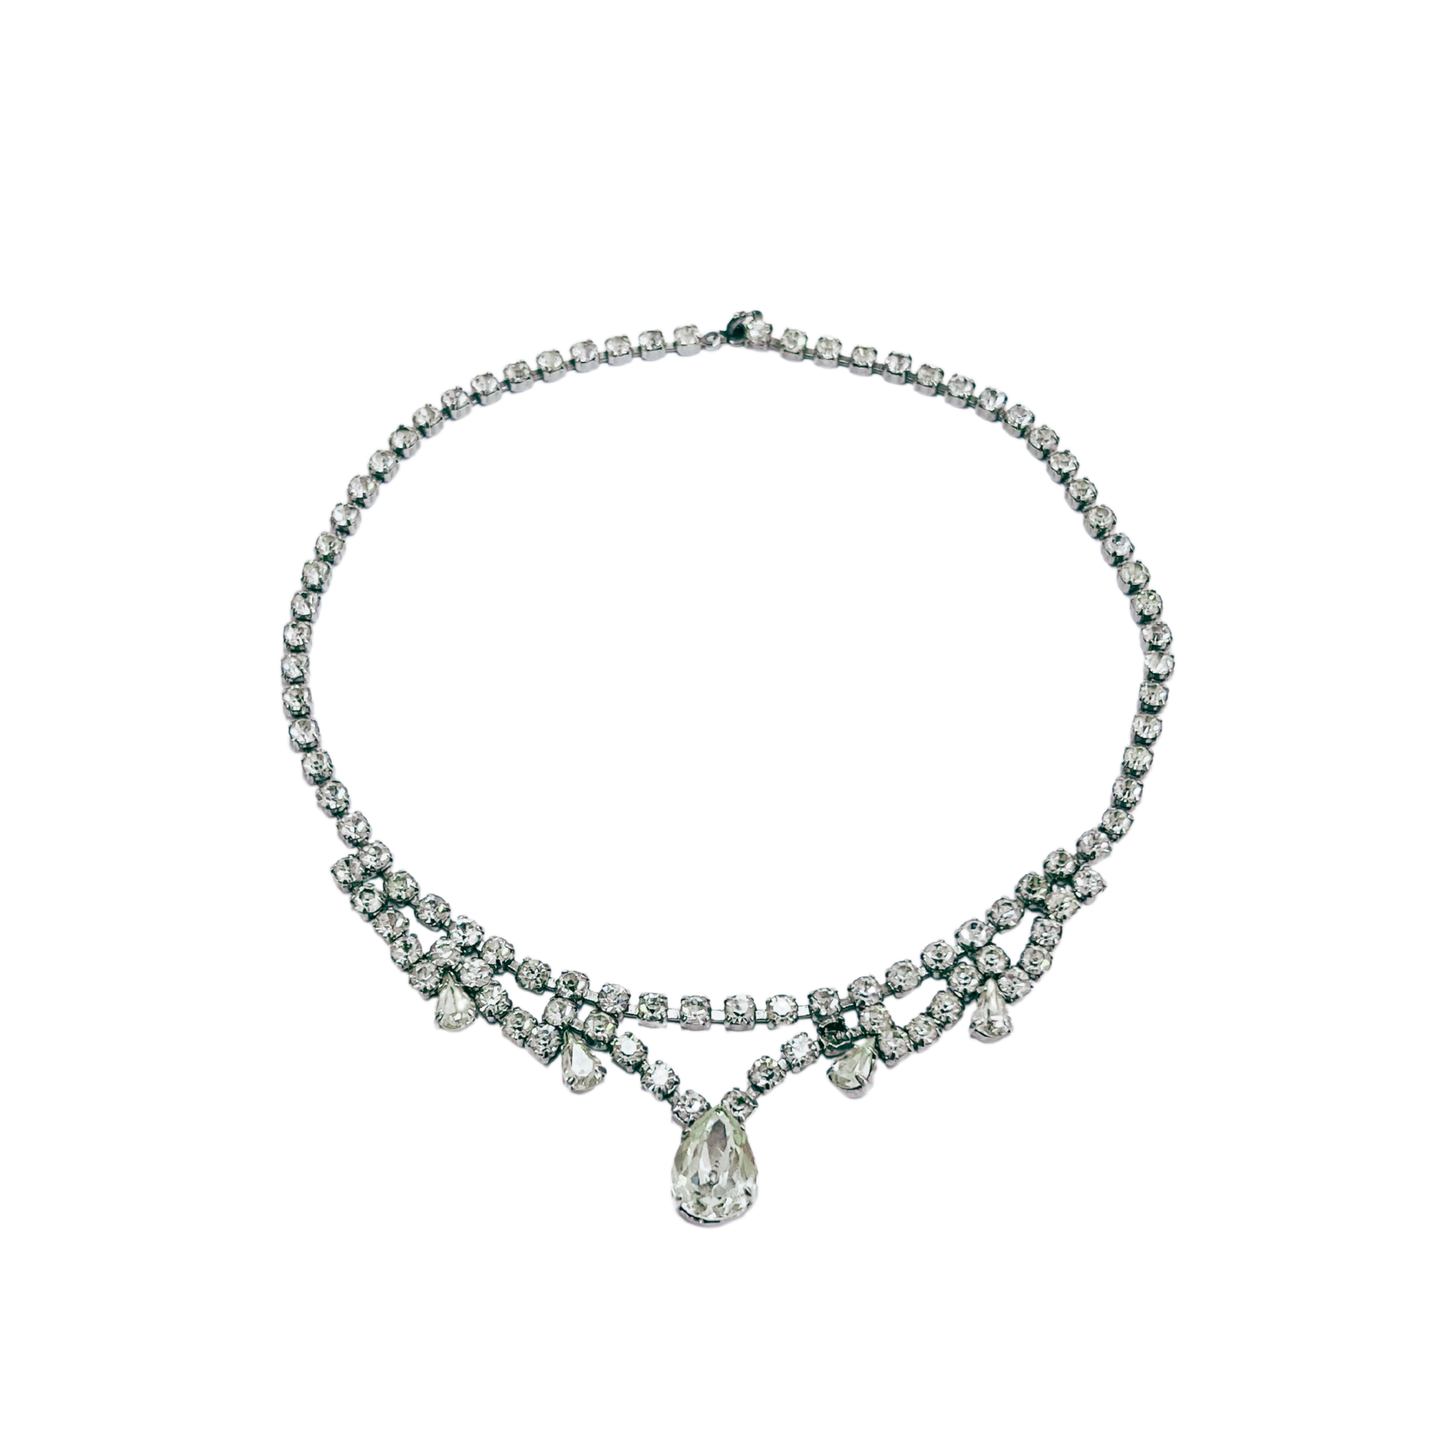 vintage 1950's diamanté necklace with tear drop detail